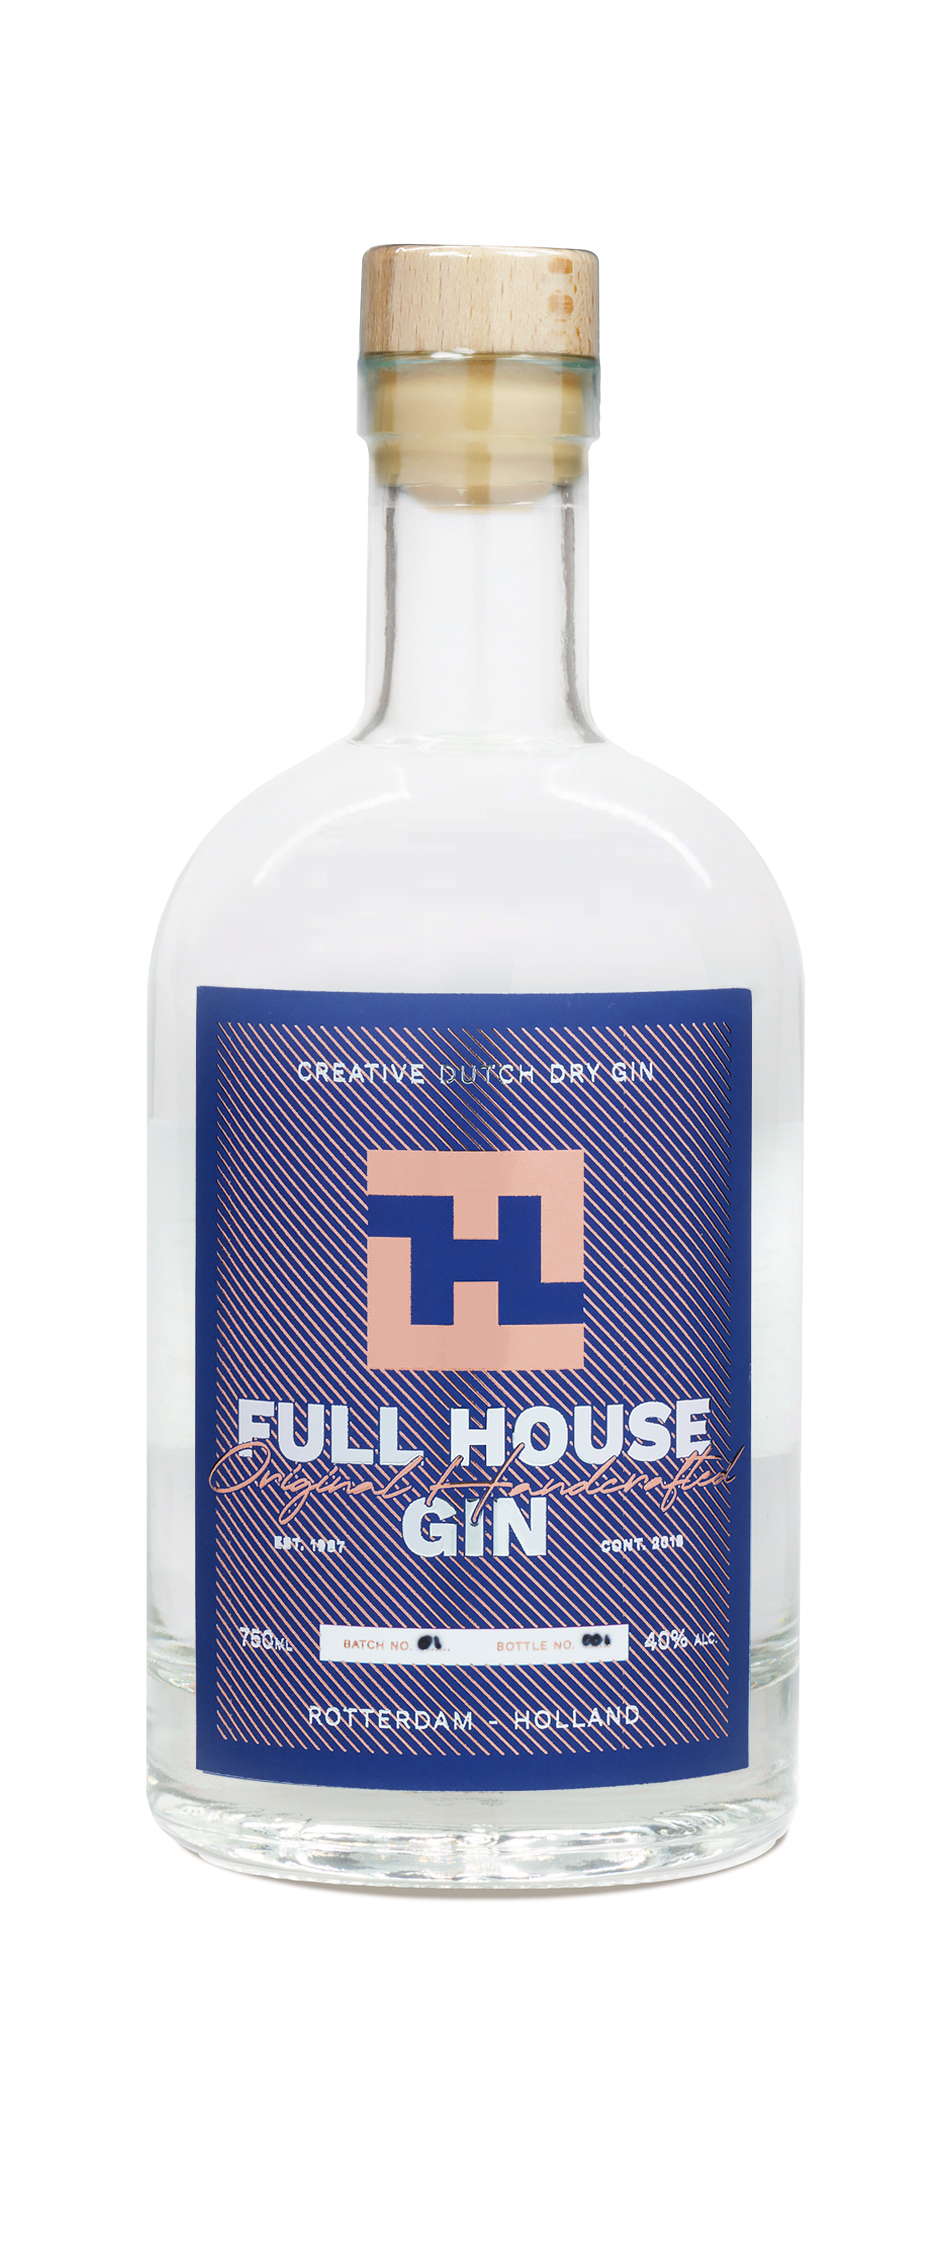 Private label fles gin met custom etiket voor Full house